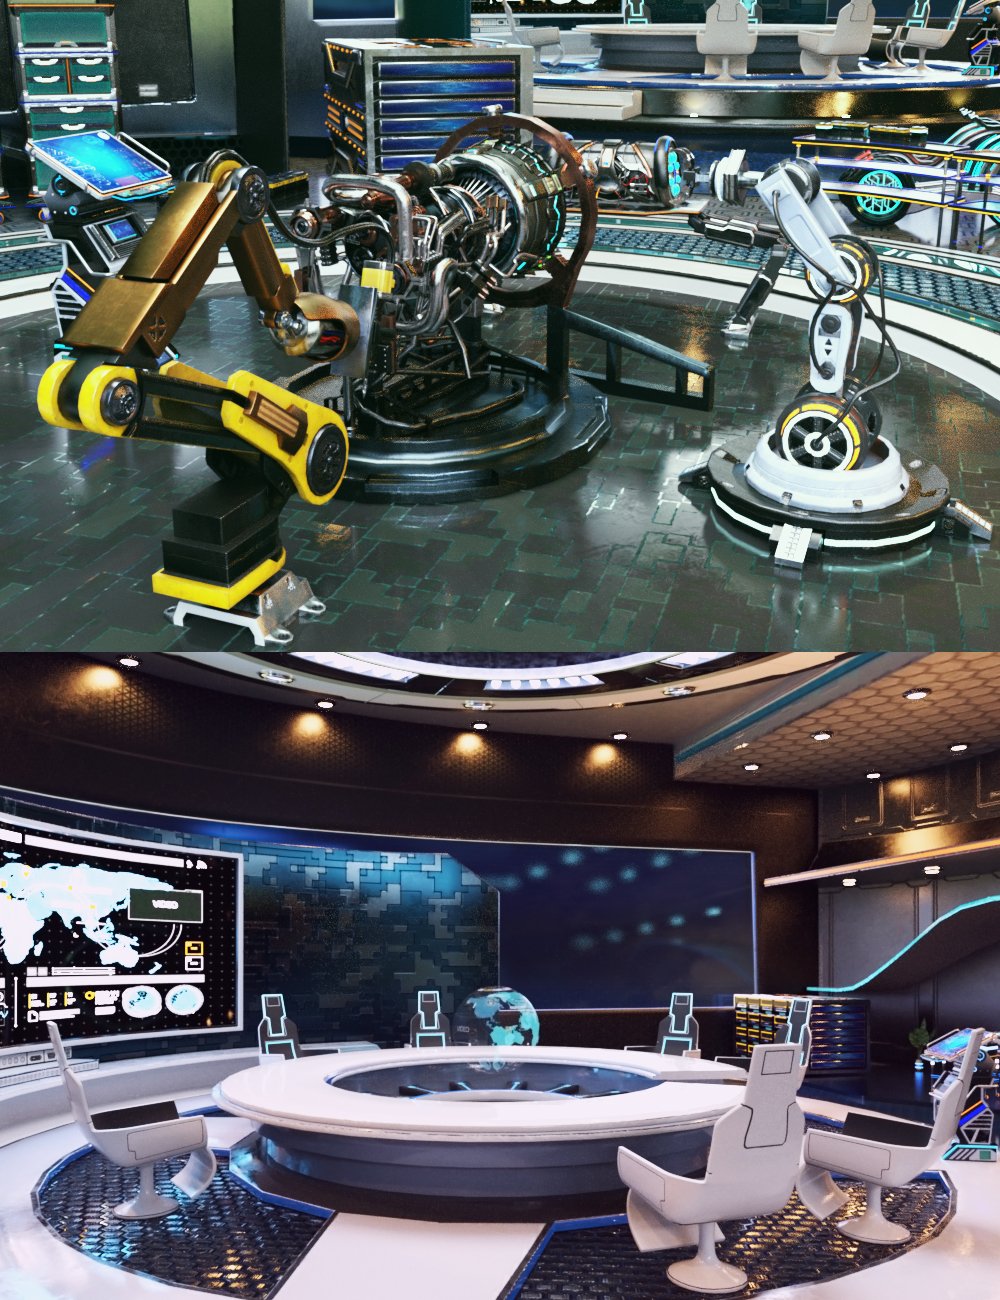 XI Billionaire's Office by: Xivon, 3D Models by Daz 3D